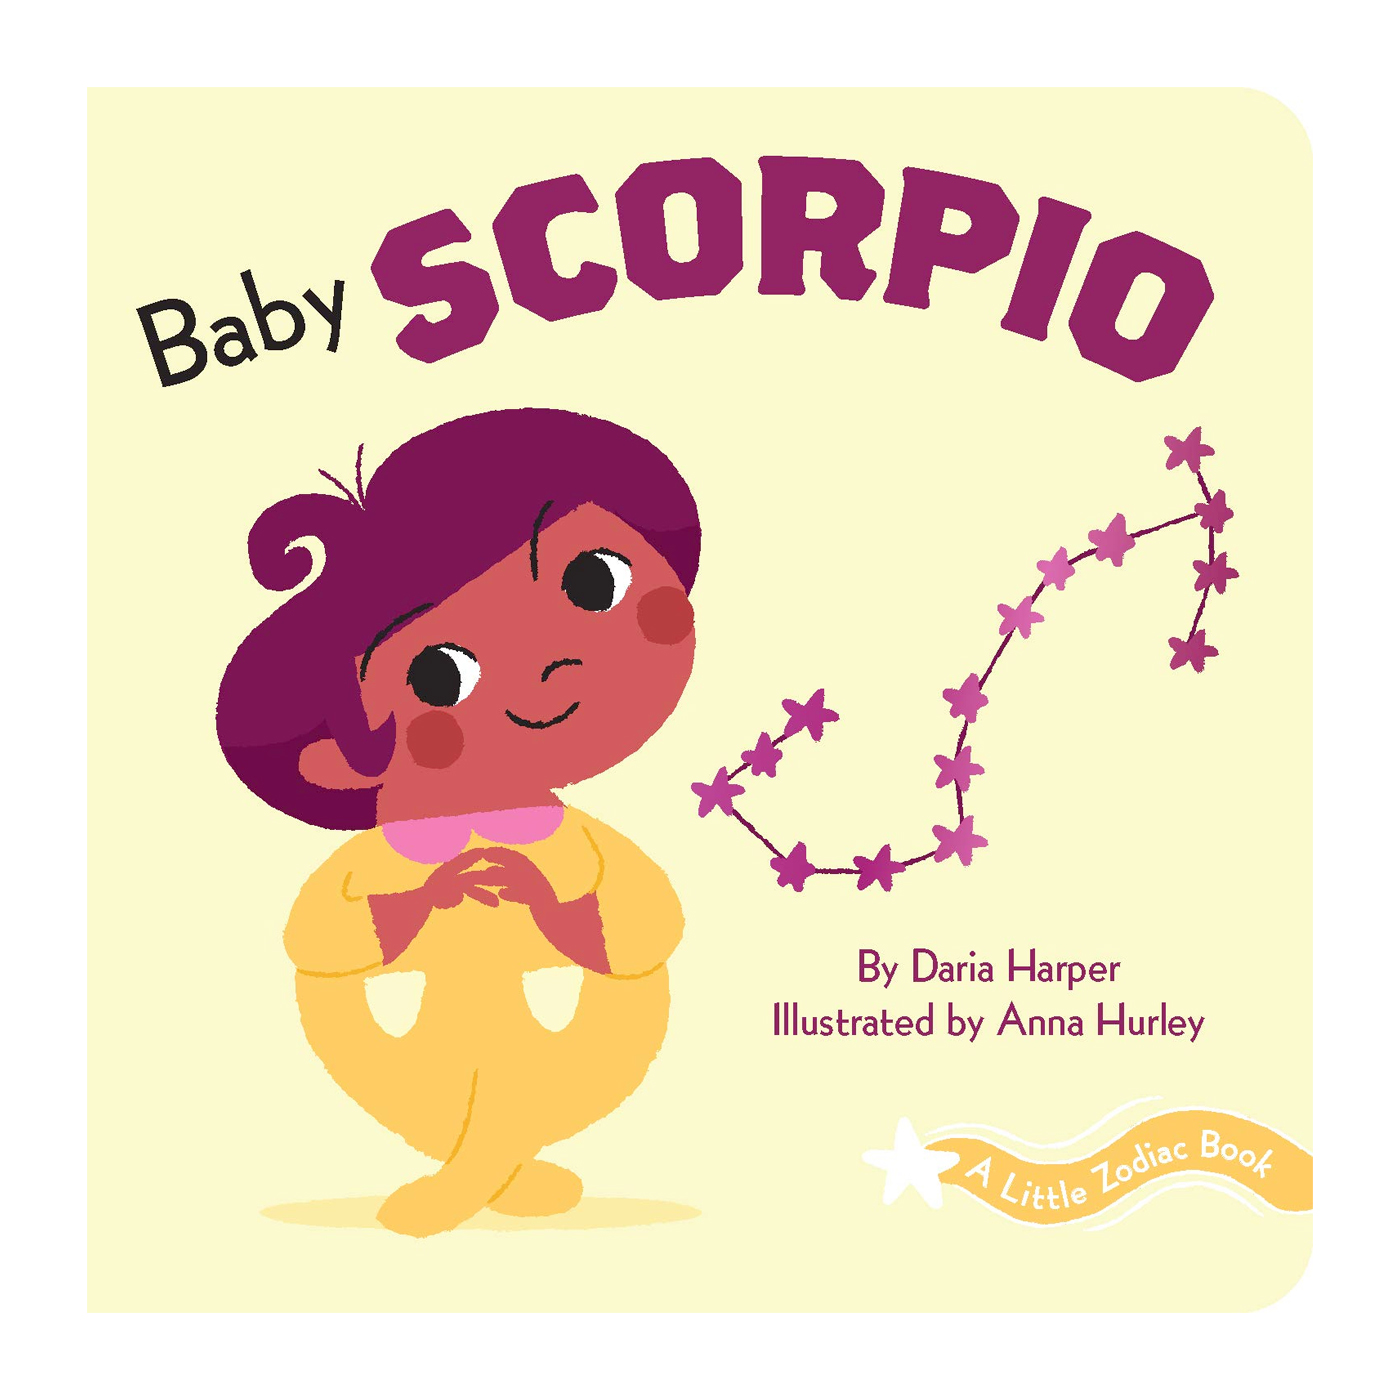 ABRAMS BOOKS Little Zodiac Book: Baby Scorpio